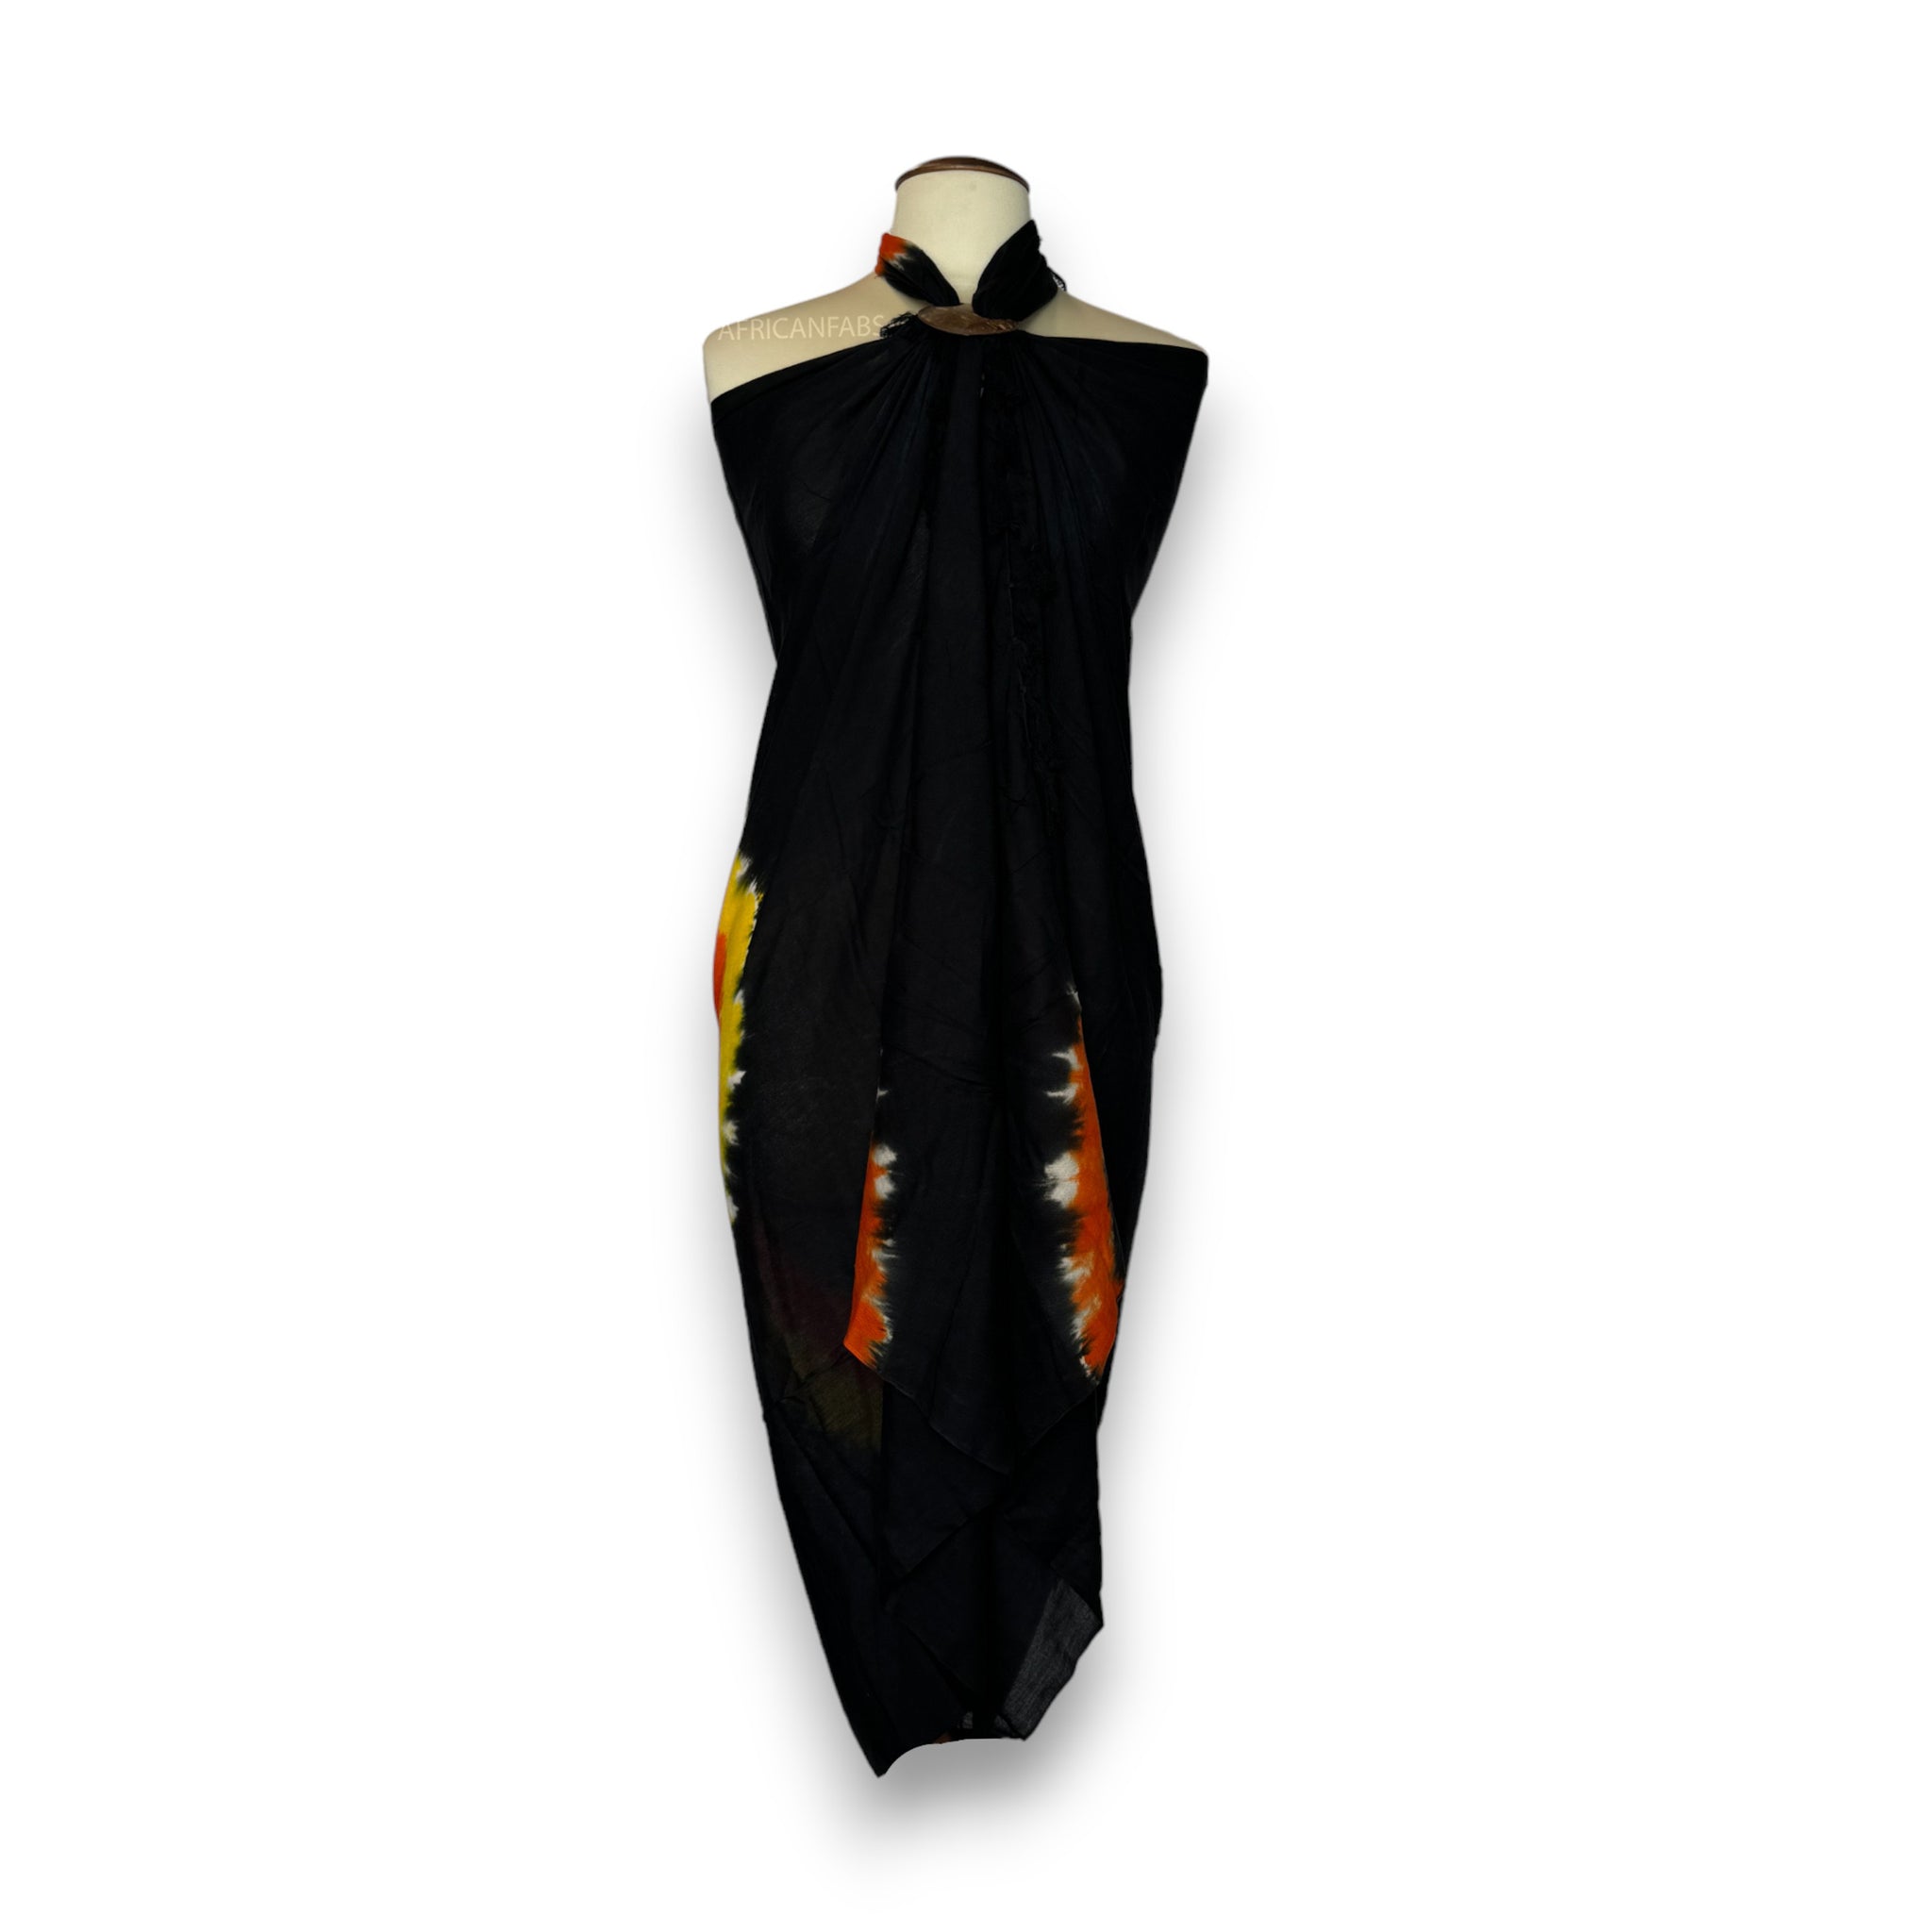 Sarong / pareo - Beachwear wrap skirt - Tie dye Black